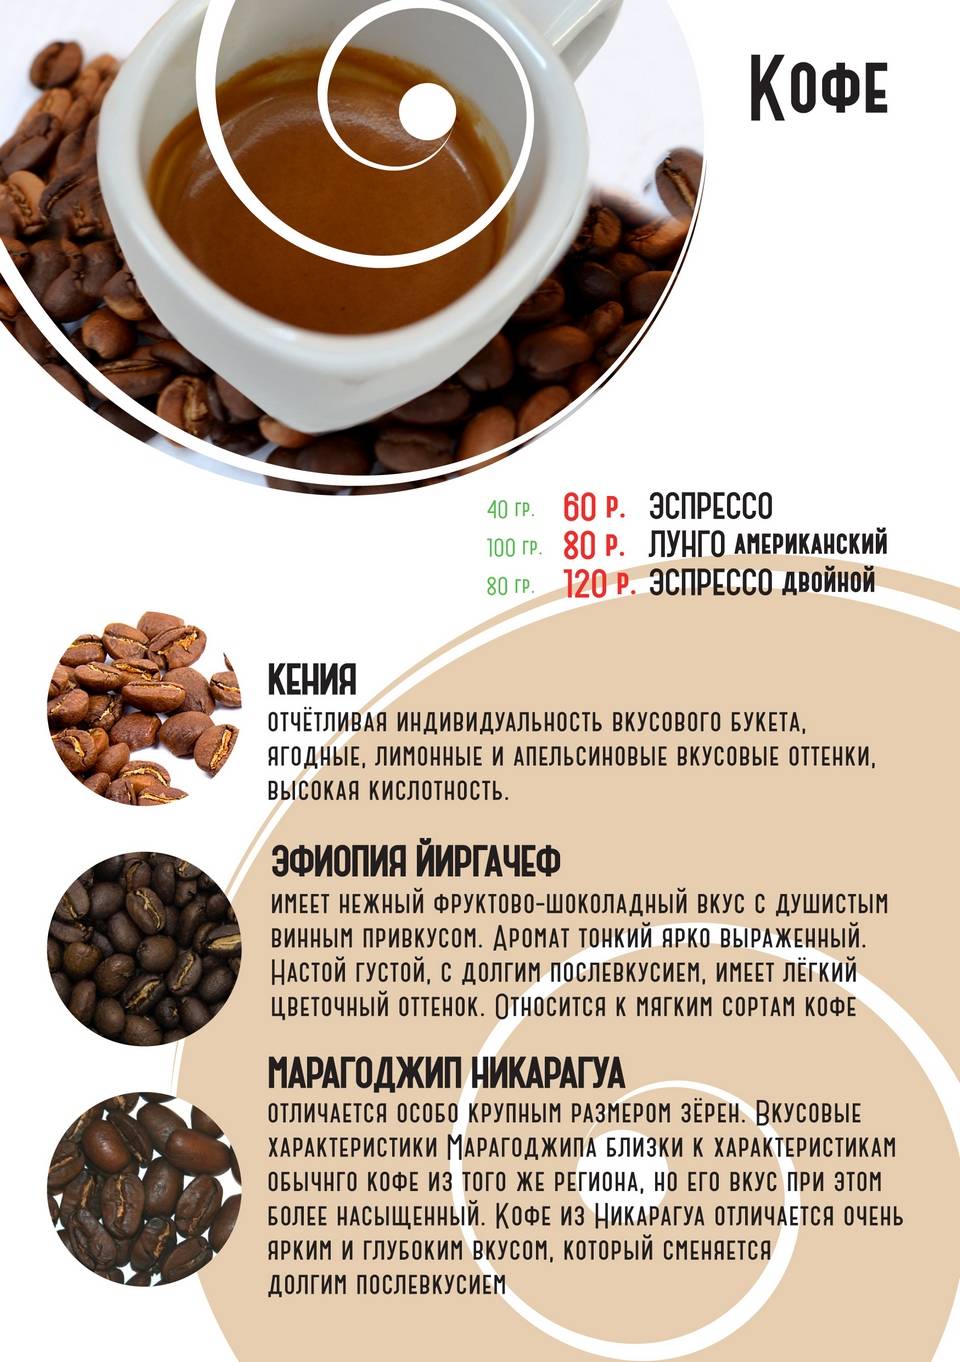 Рецепт молотого кофе. Популярные напитки из кофе. Карта напитков кофе. Рецепты кофе. Грамм кофе на эспрессо.